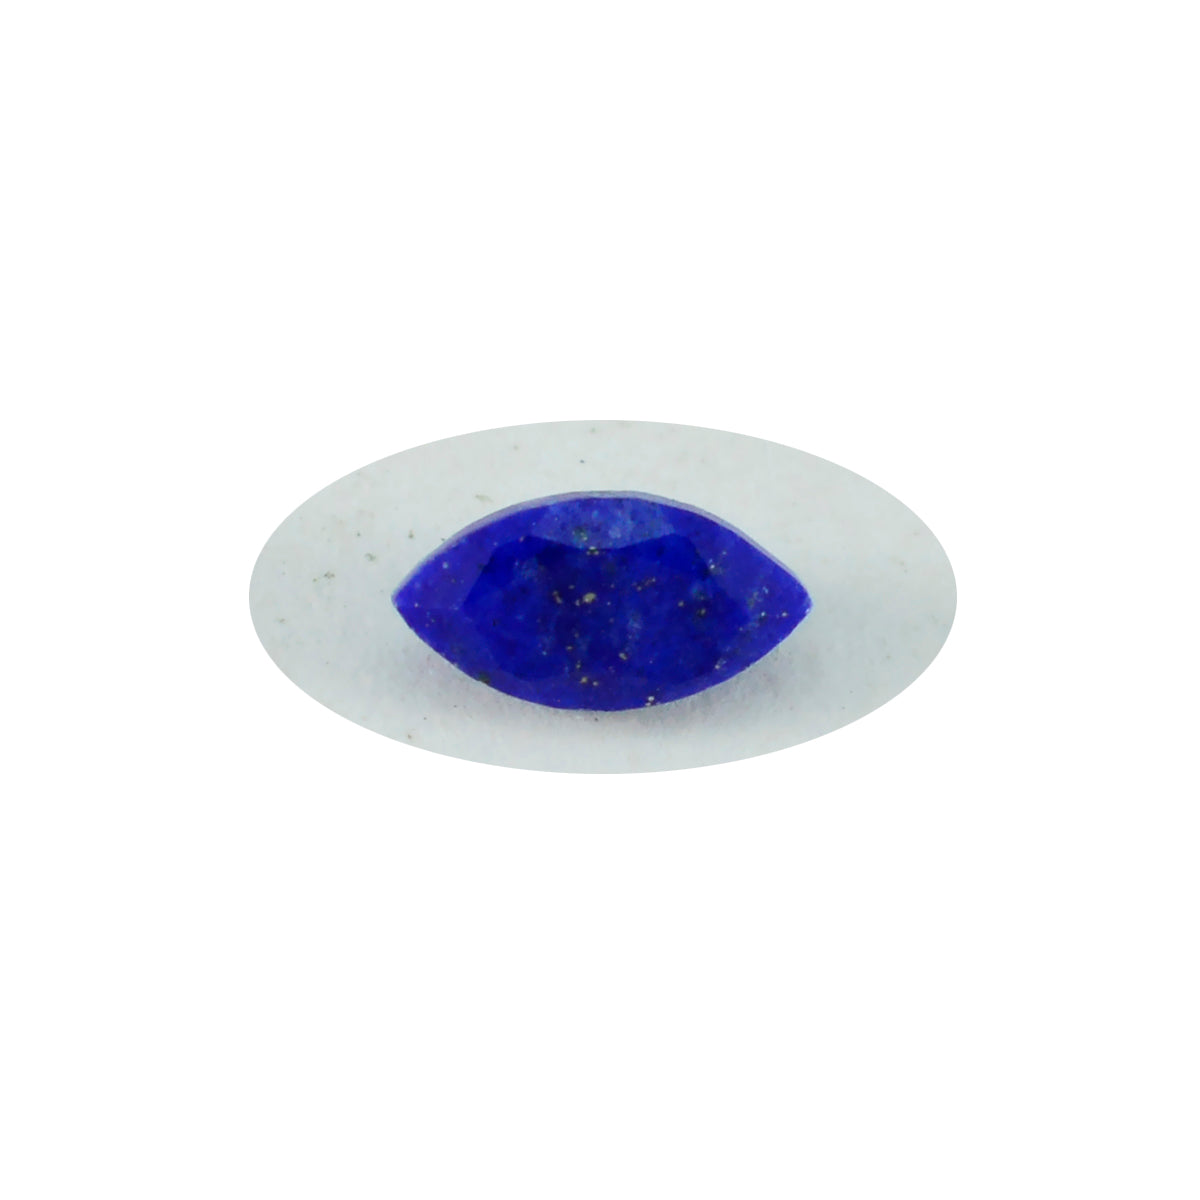 riyogems 1 шт. натуральный синий лазурит ограненный 10x20 мм форма маркиза хорошее качество свободные драгоценные камни